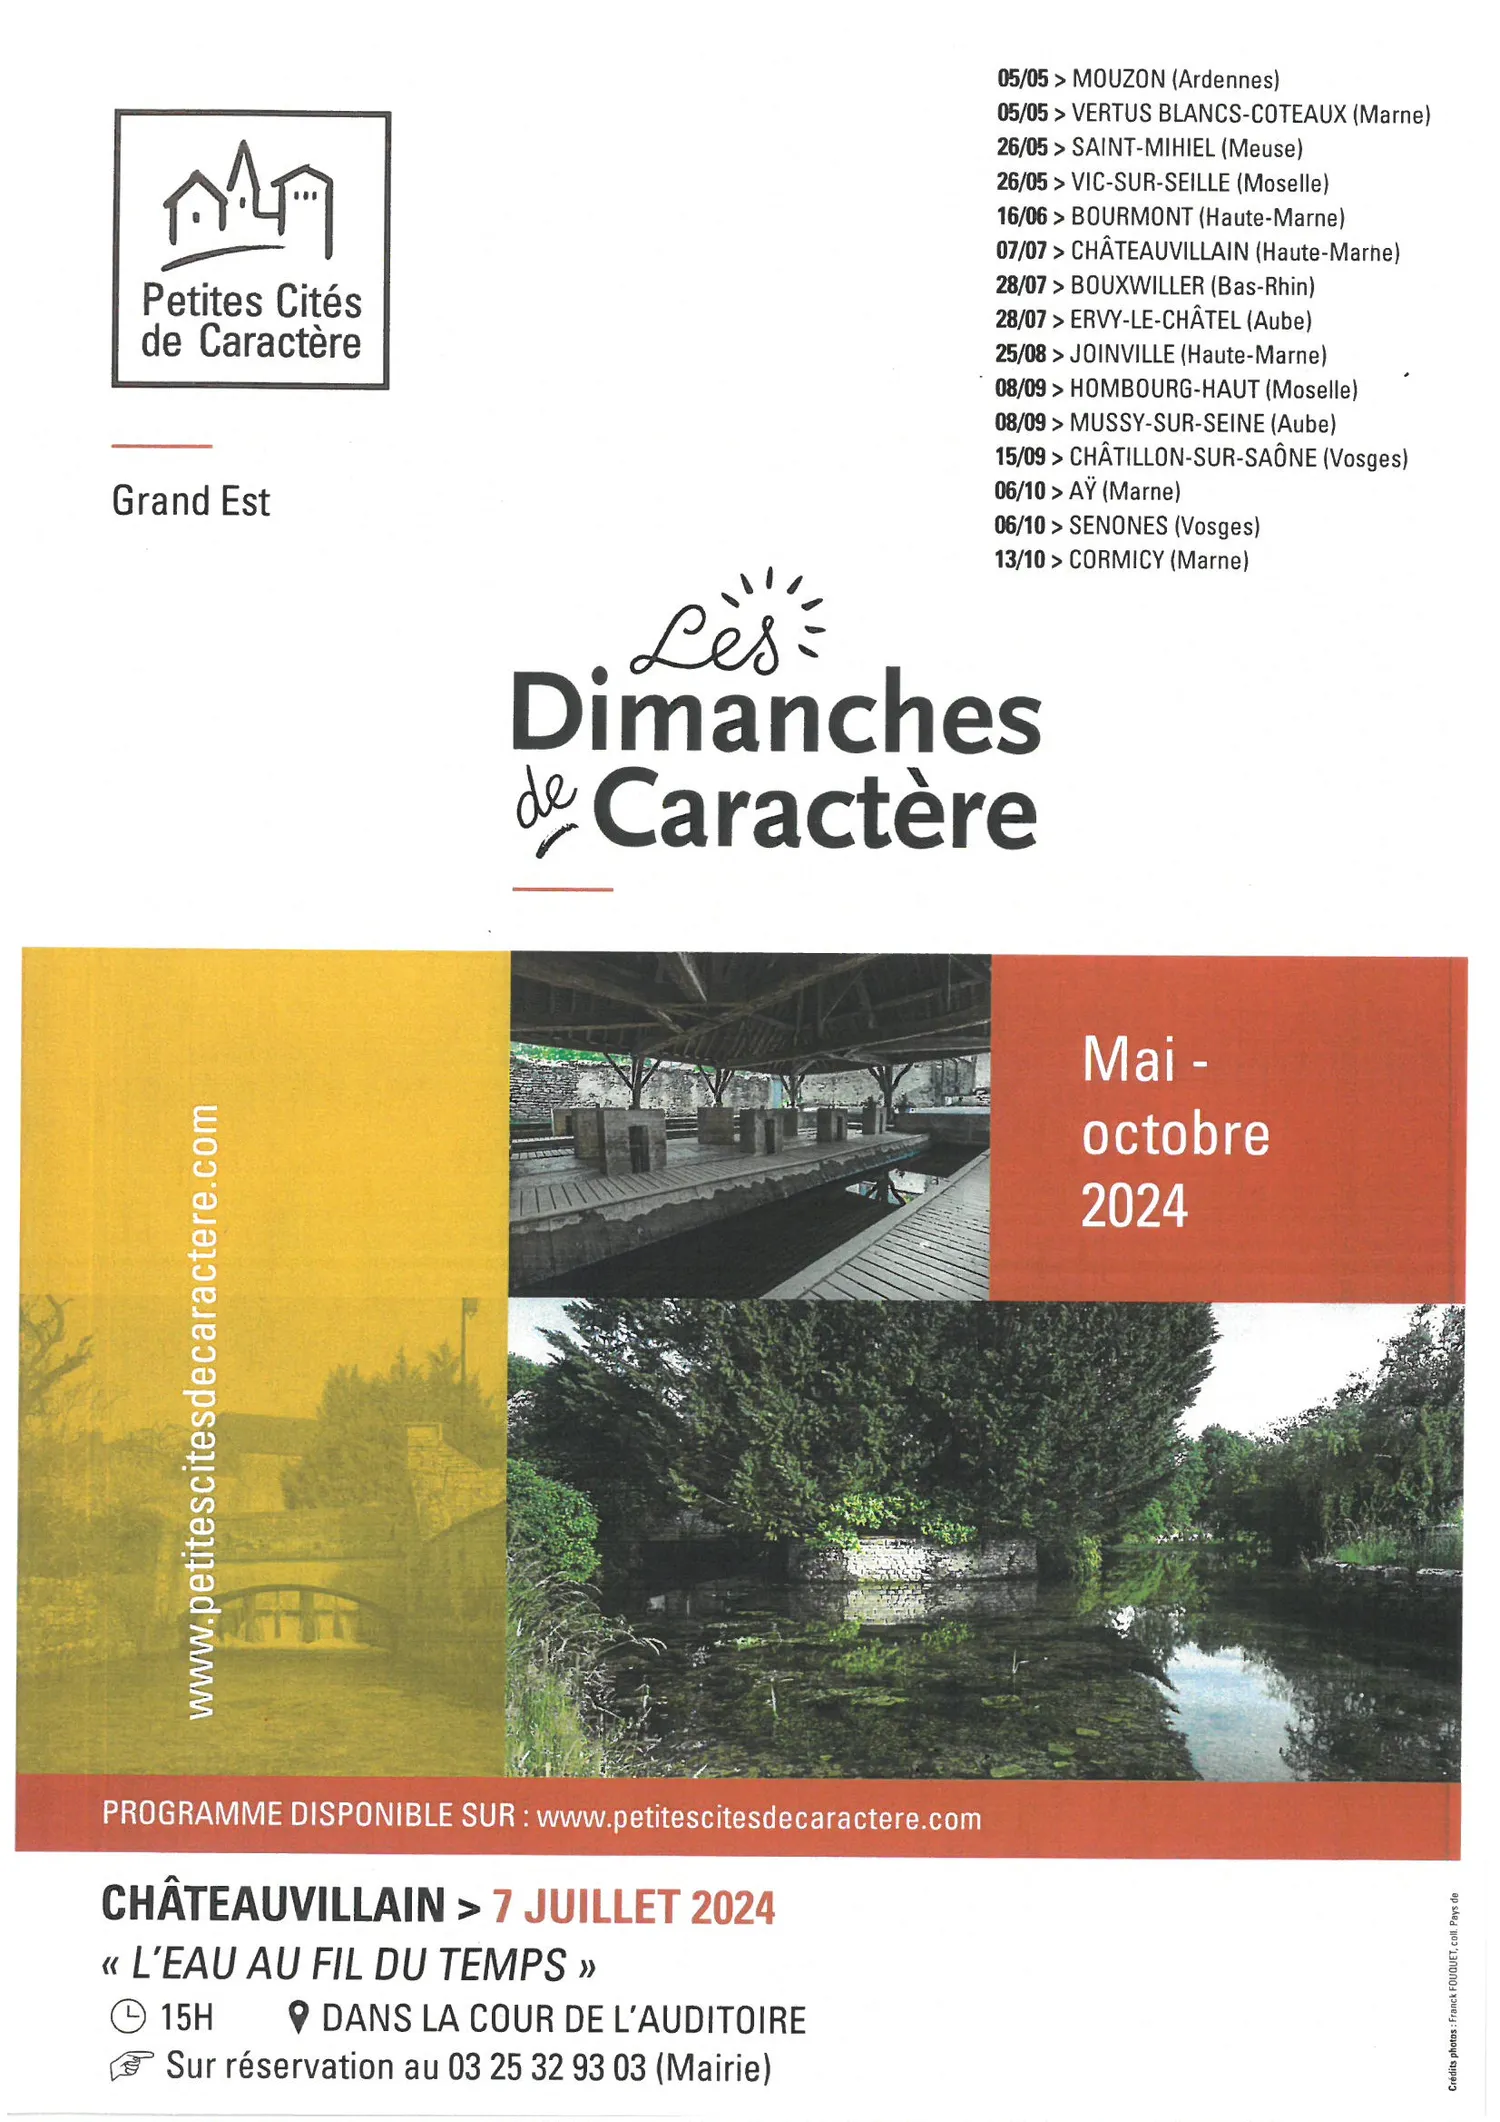 Image qui illustre: Dimanche De Caractere à Châteauvillain - 1